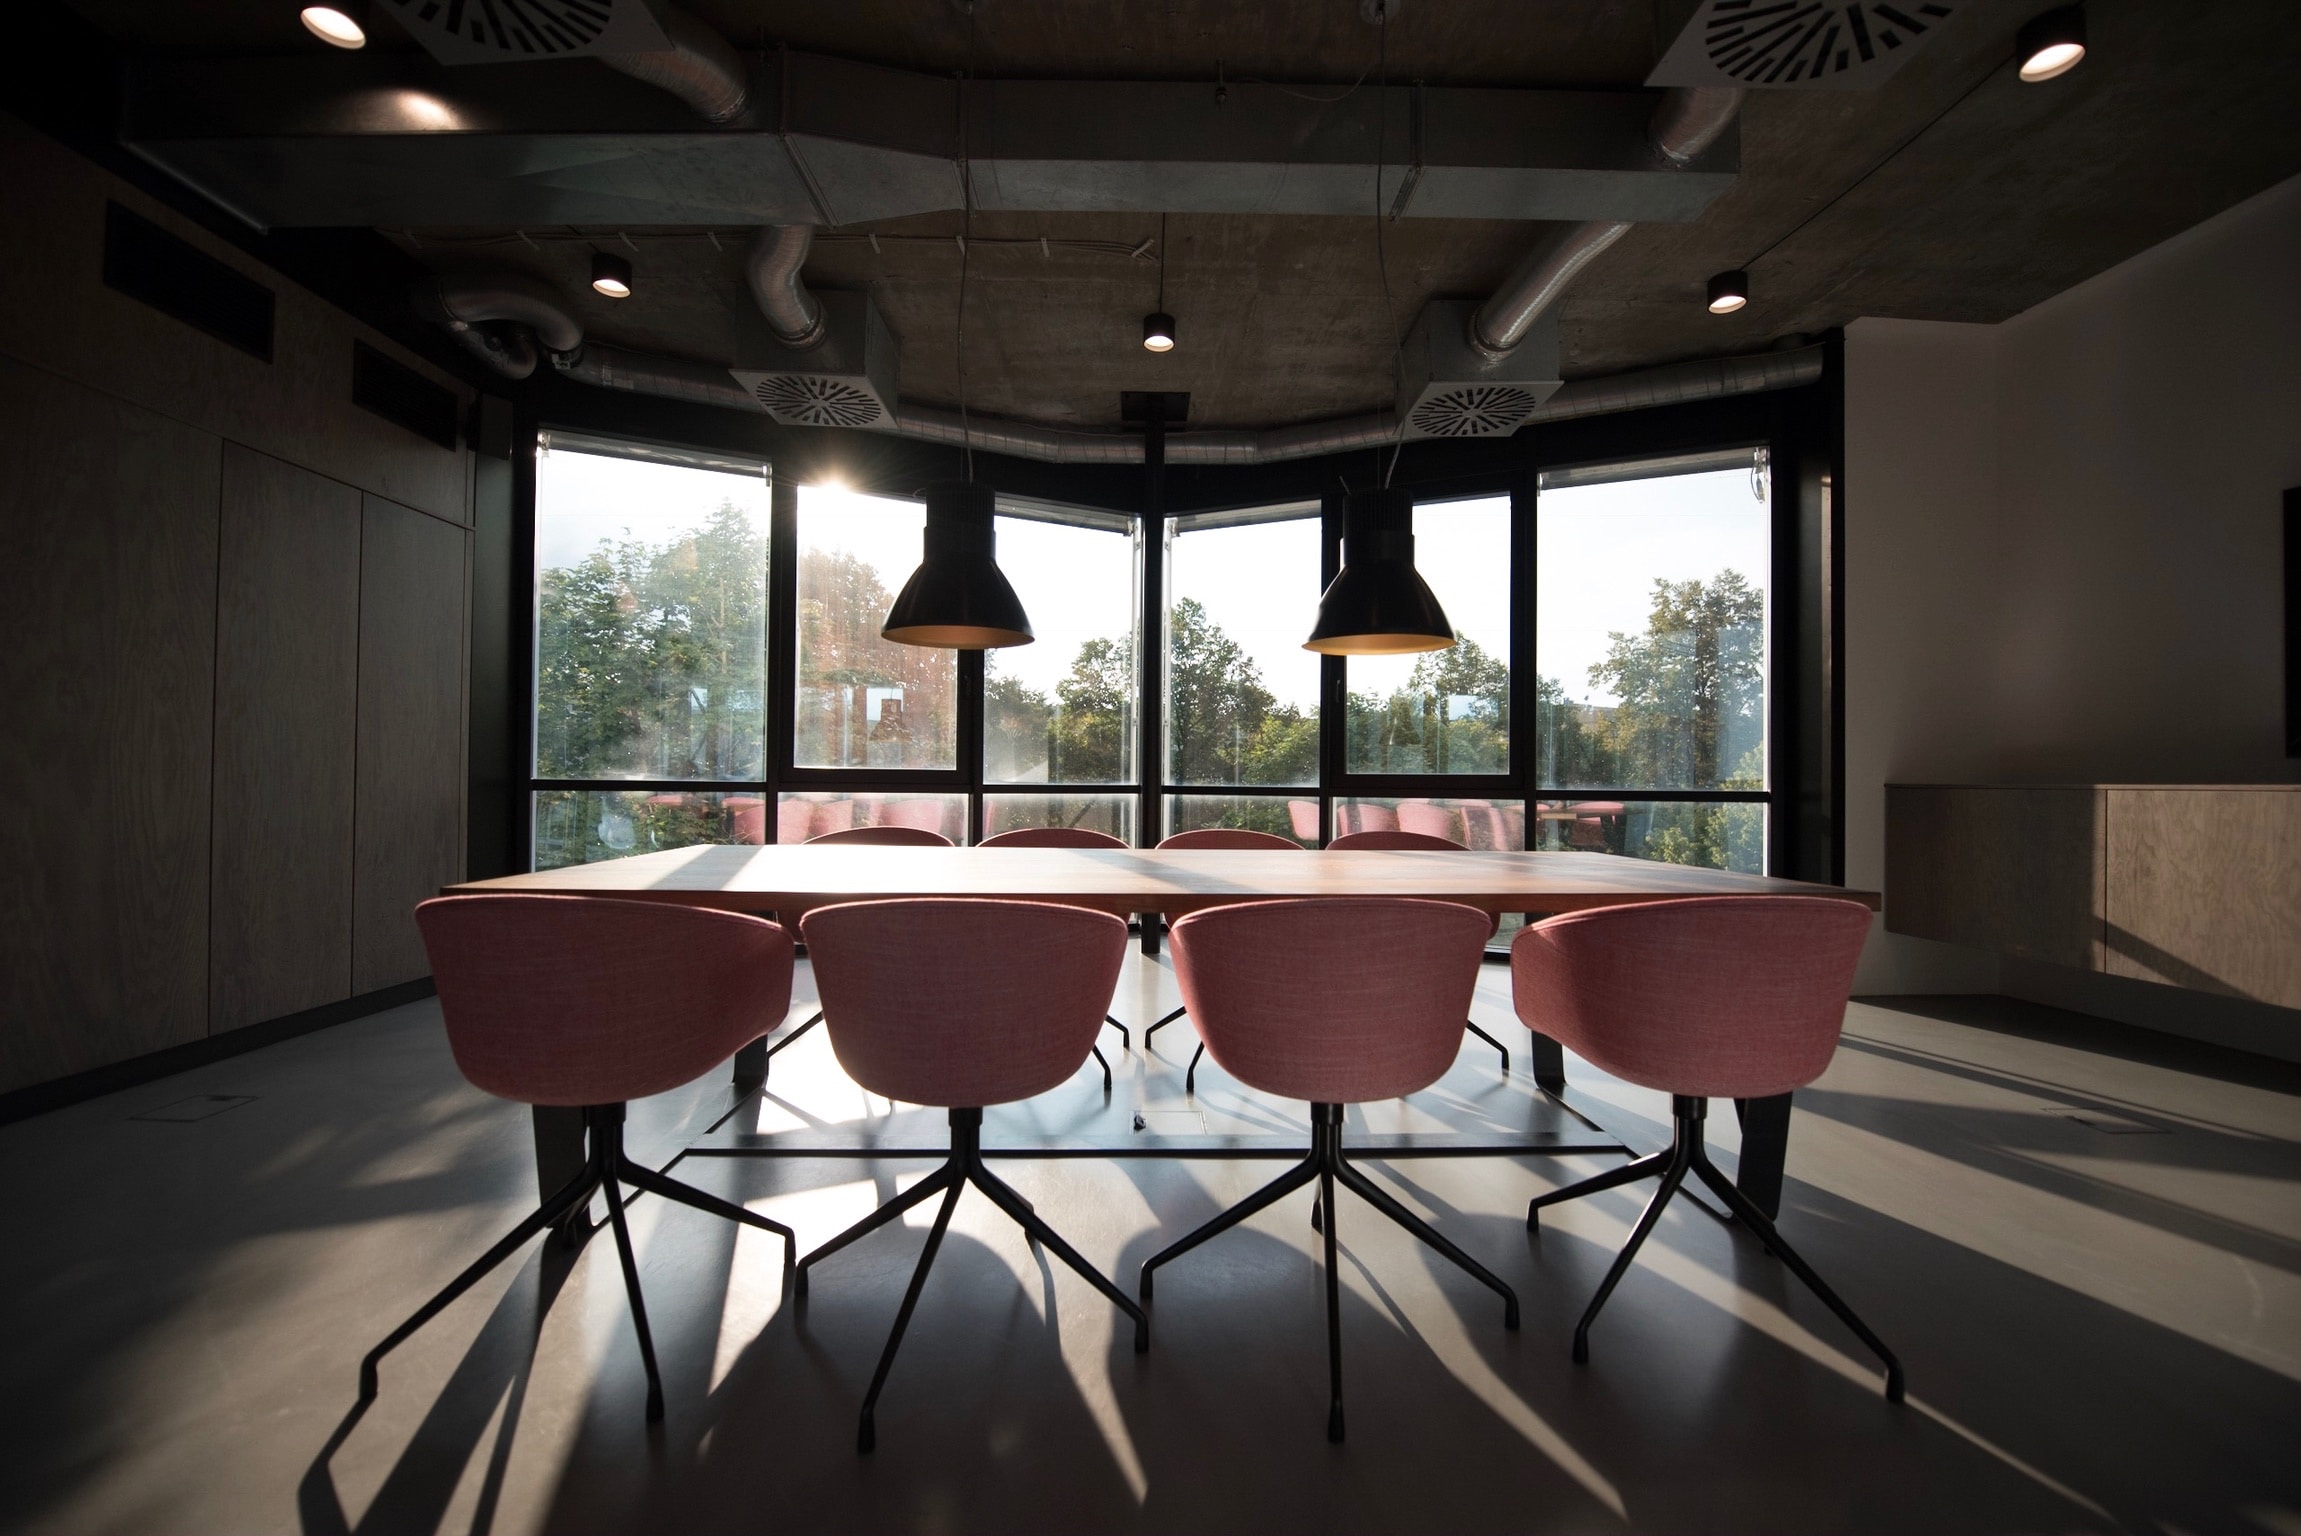 Oficina - Alquiler de espacios flexibles y coworking en WTC Almeda Park, Barcelona